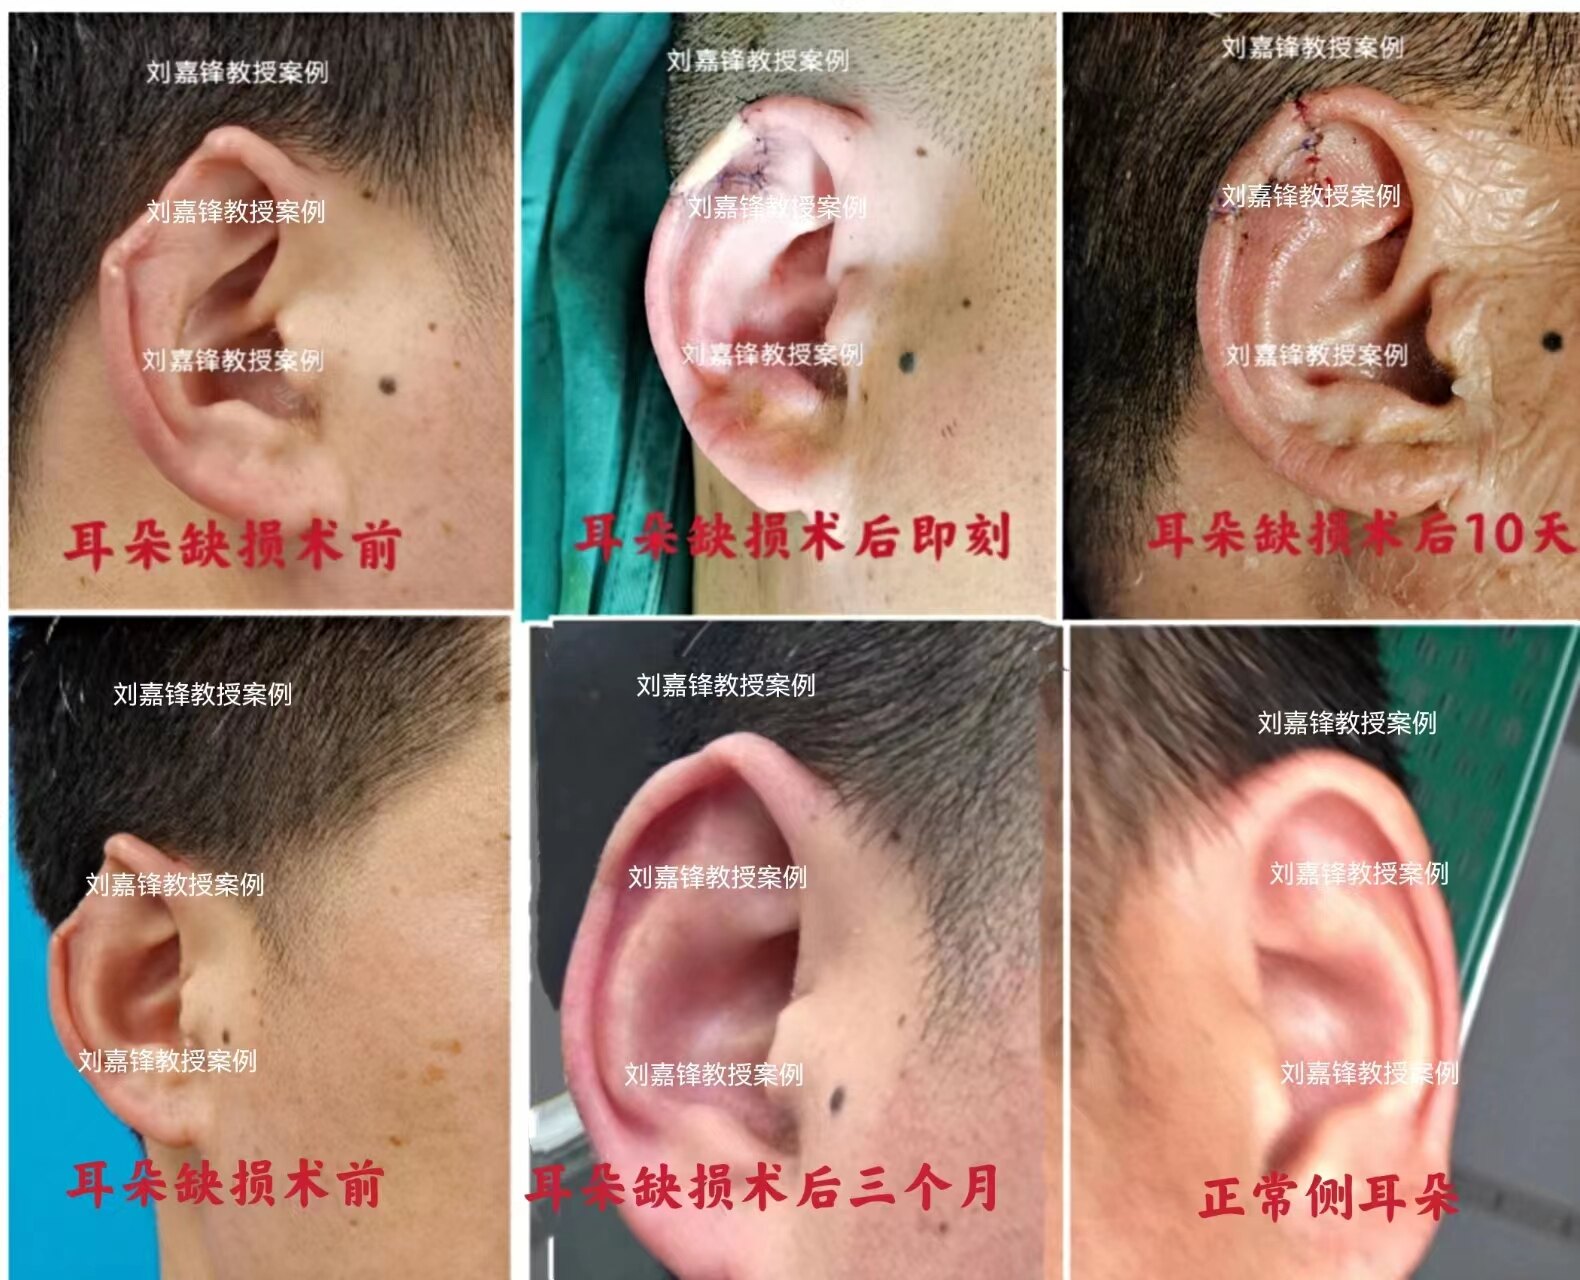 【案例分析】26岁男子耳朵受伤，做部分耳再造手术重获完好耳朵 - 哔哩哔哩